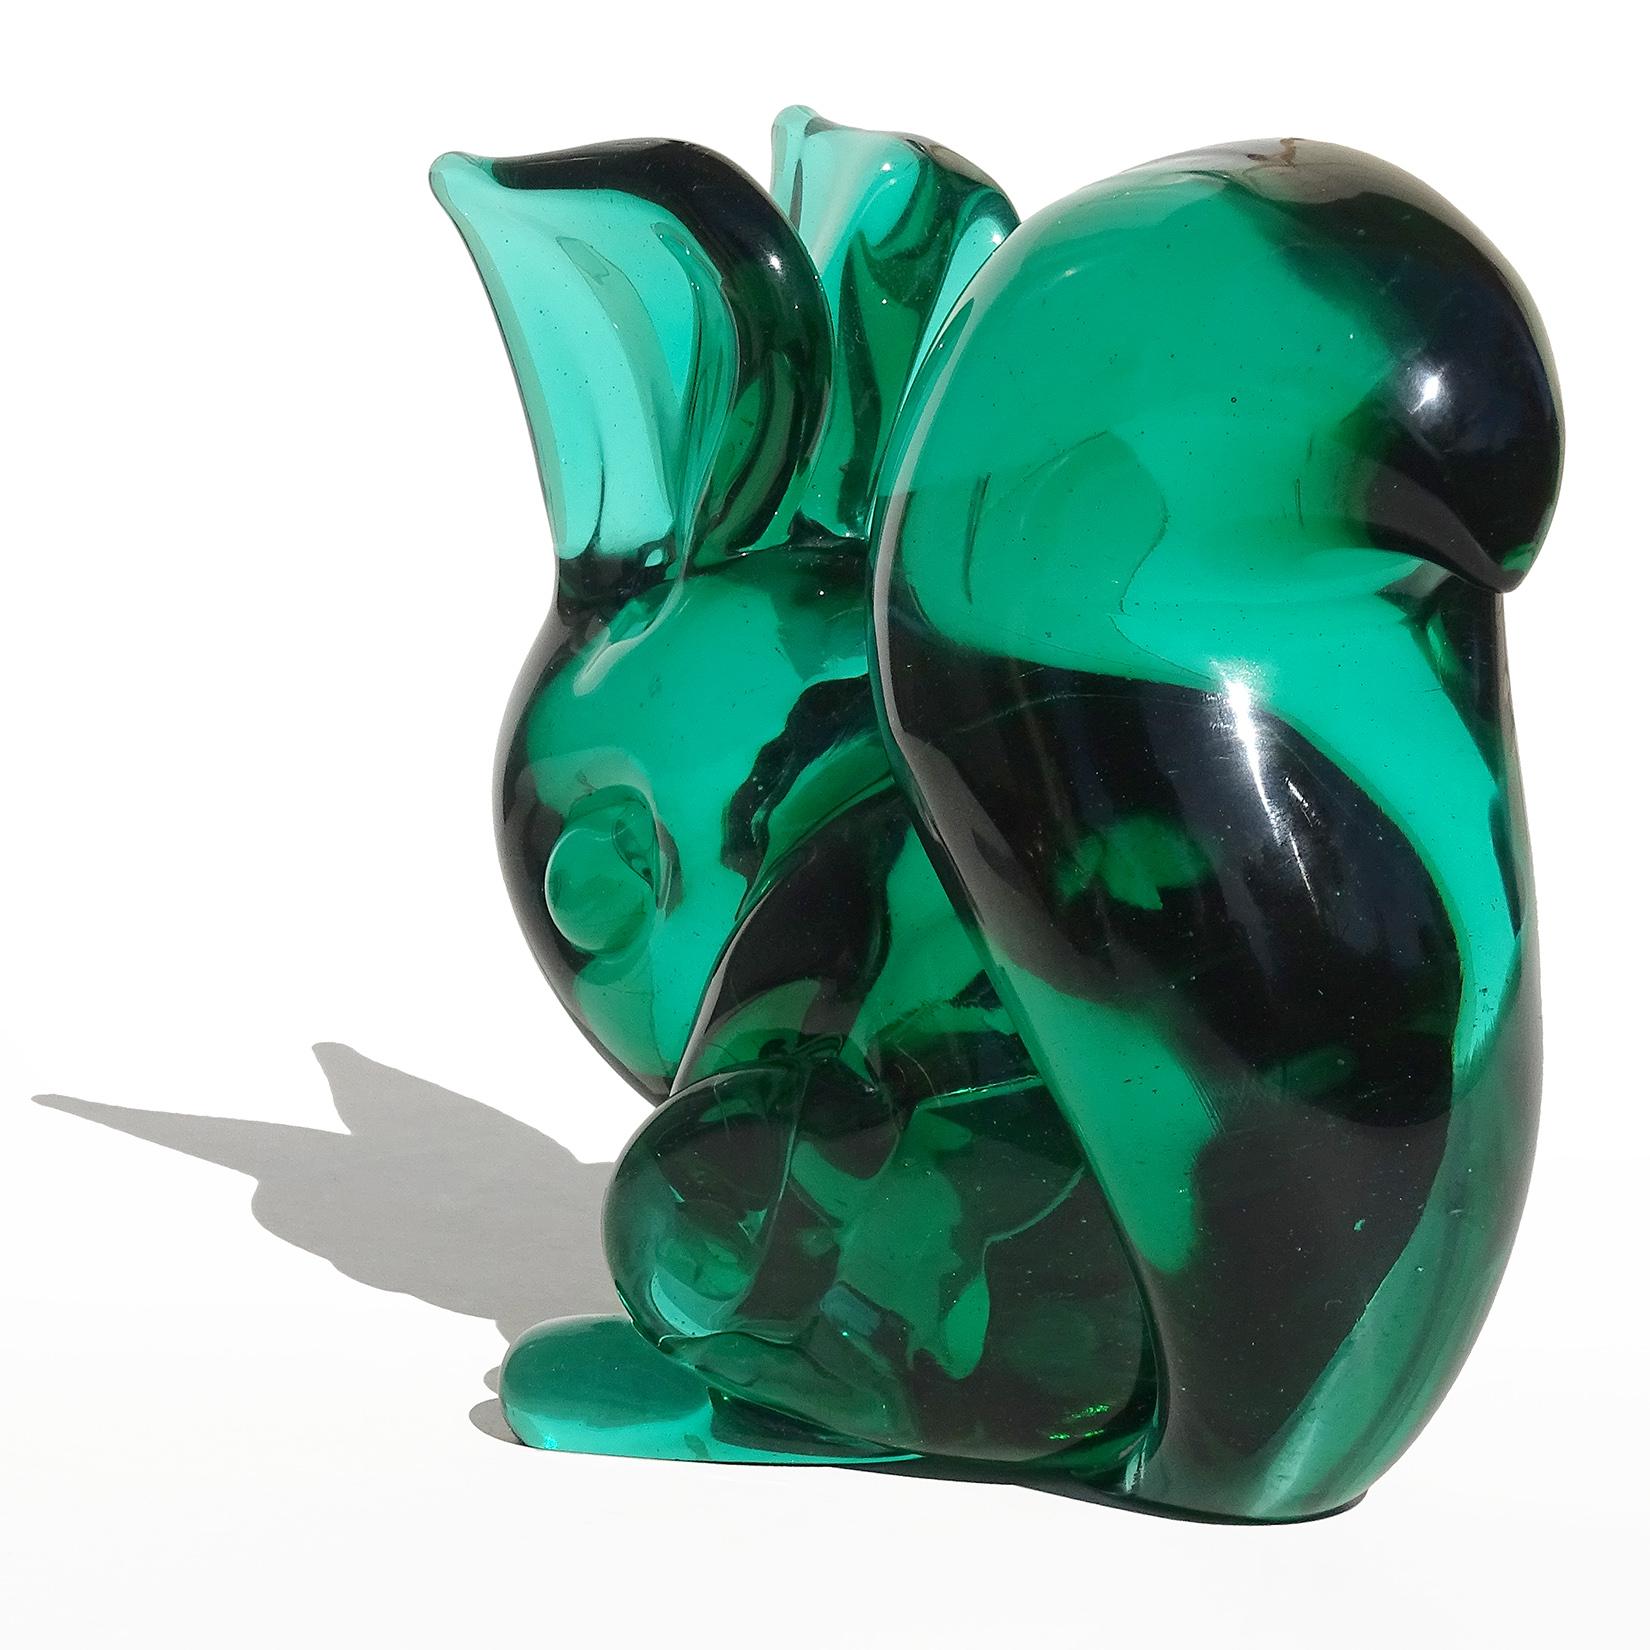 Seguso Vetri D'Arte Poli Murano Sommerso Italian Art Glass Squirrel Sculpture In Good Condition For Sale In Kissimmee, FL